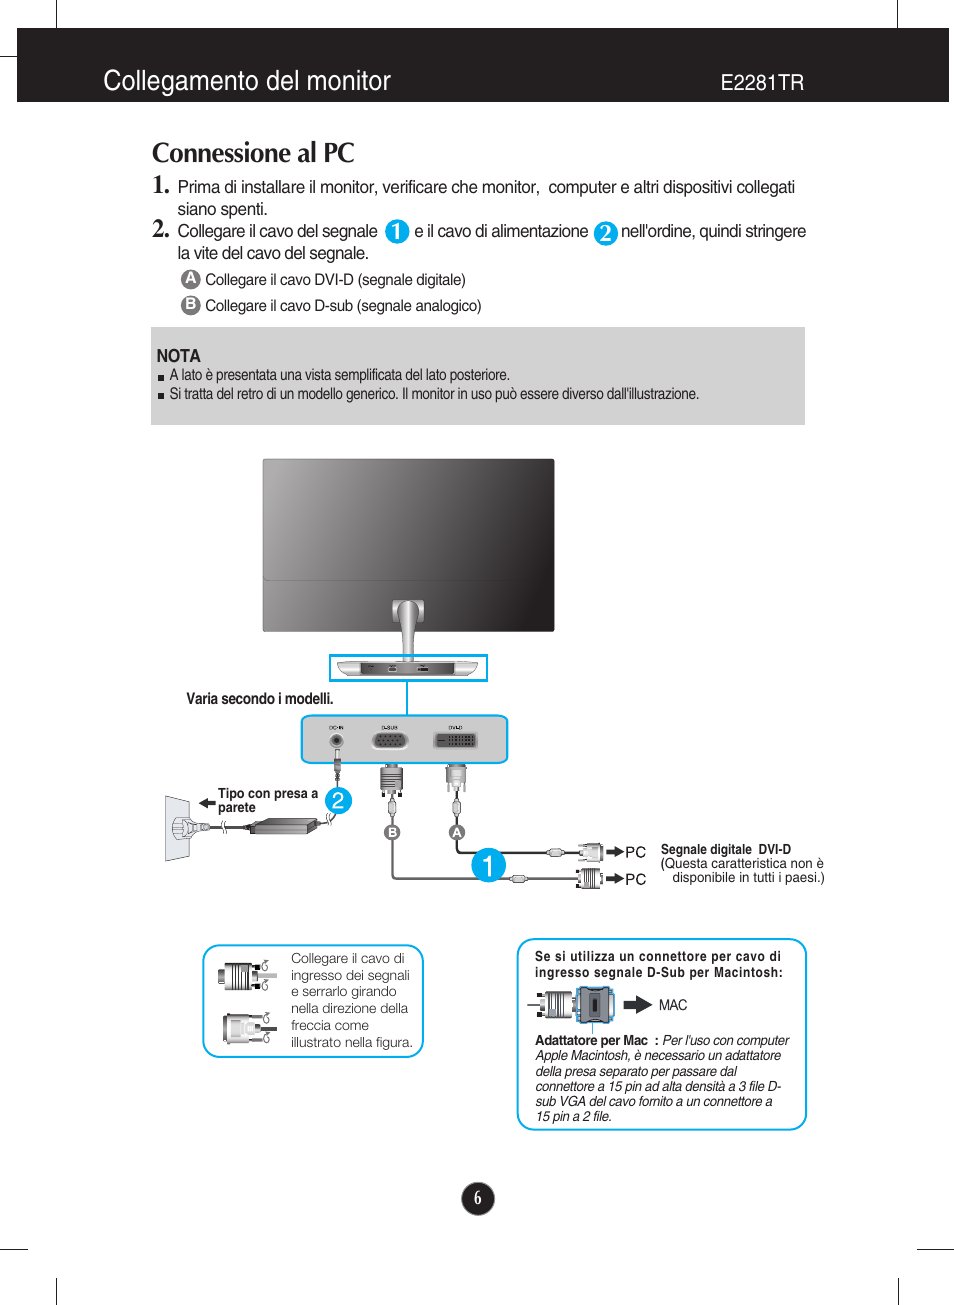 Connessione al pc, E2281tr, Collegamento del monitor | LG E2281VR Manuale d'uso | Pagina 7 / 35